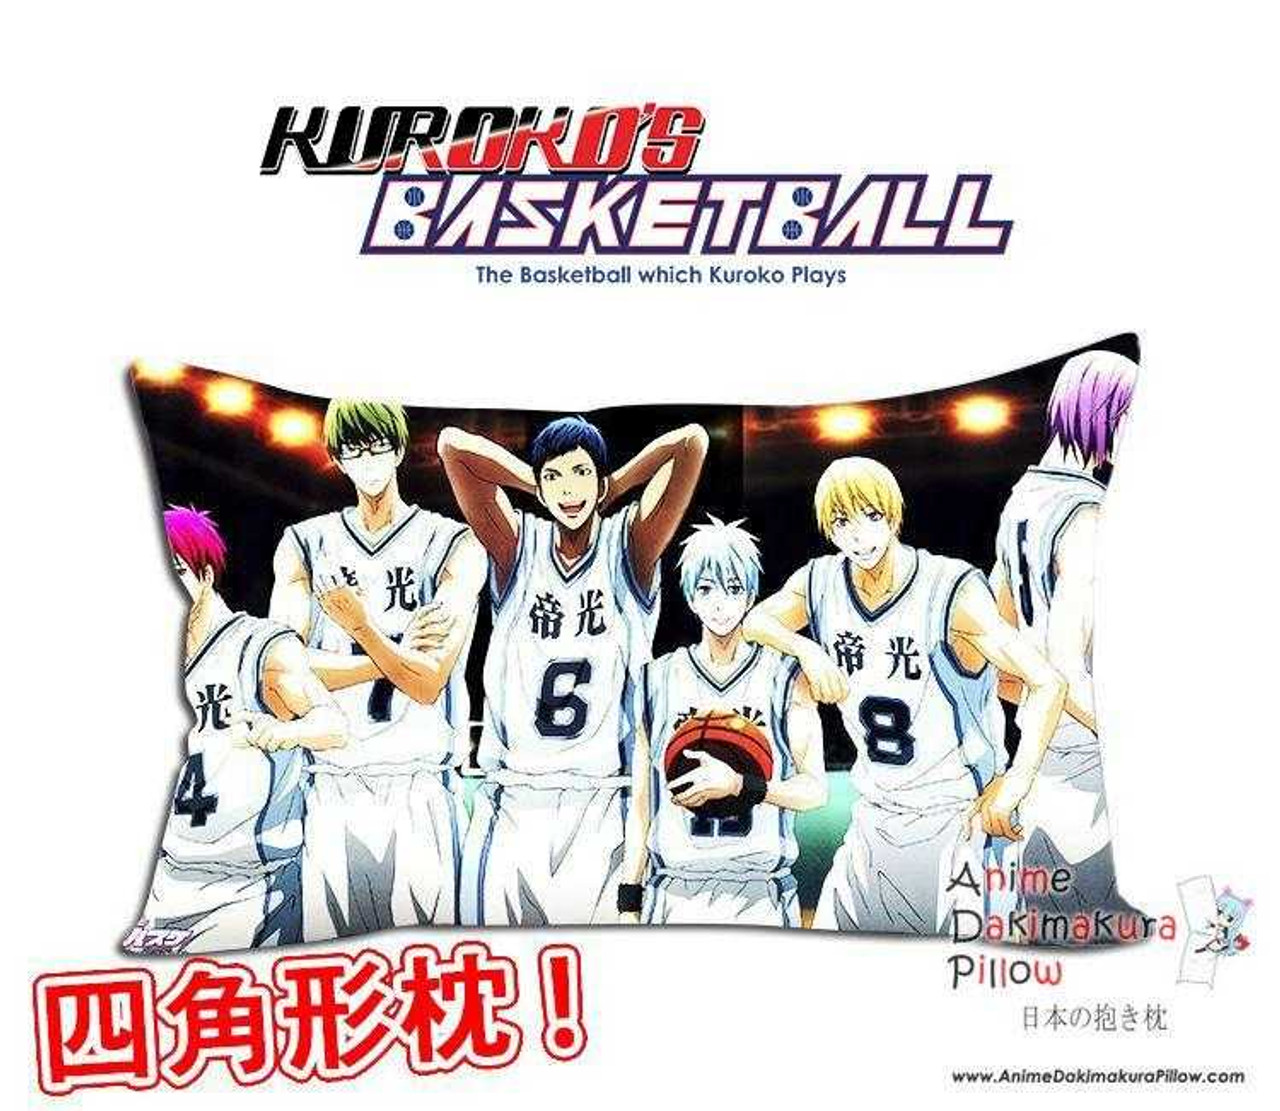 New Kuroko No Basket Anime Waifu Dakimakura Rectangle 40x70cm Pillow Cover Gzfong 08 5335